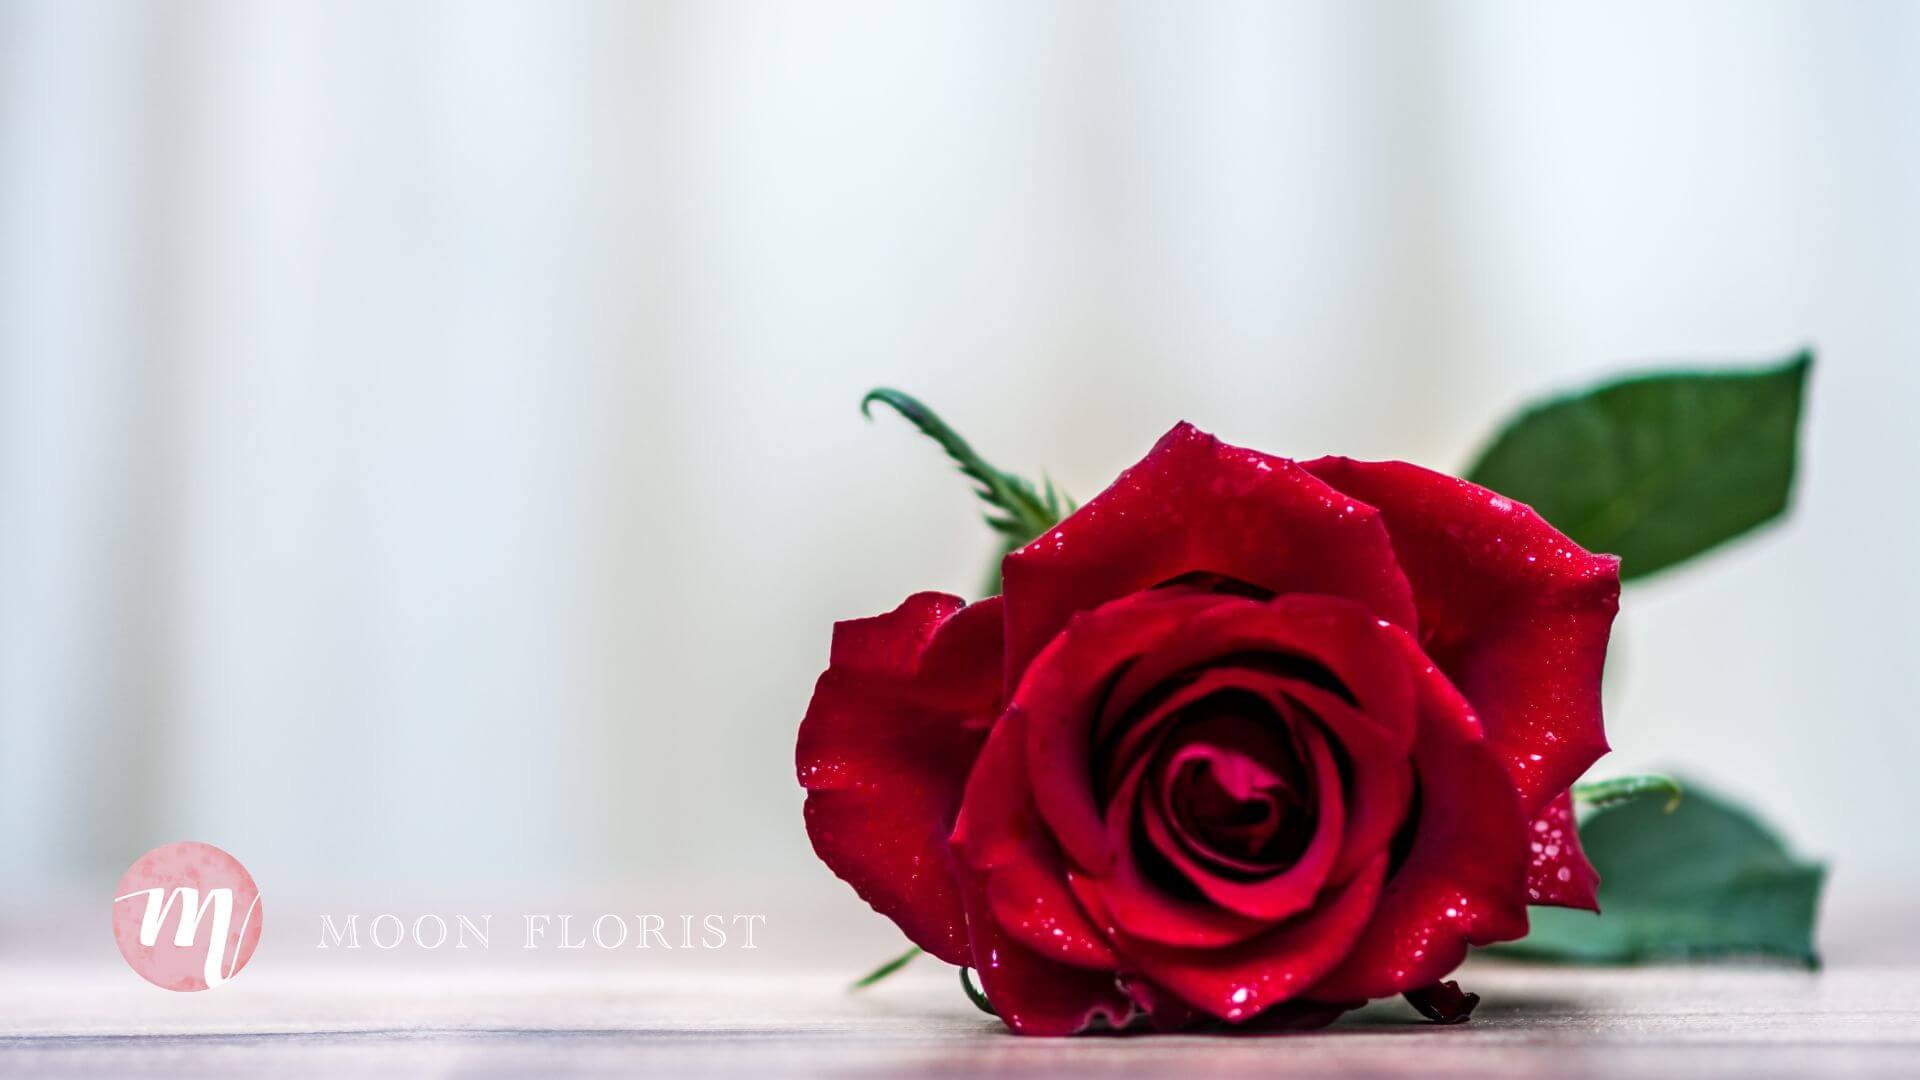 求婚玫瑰, 求婚玫瑰花, 玫瑰花求婚 -pic01